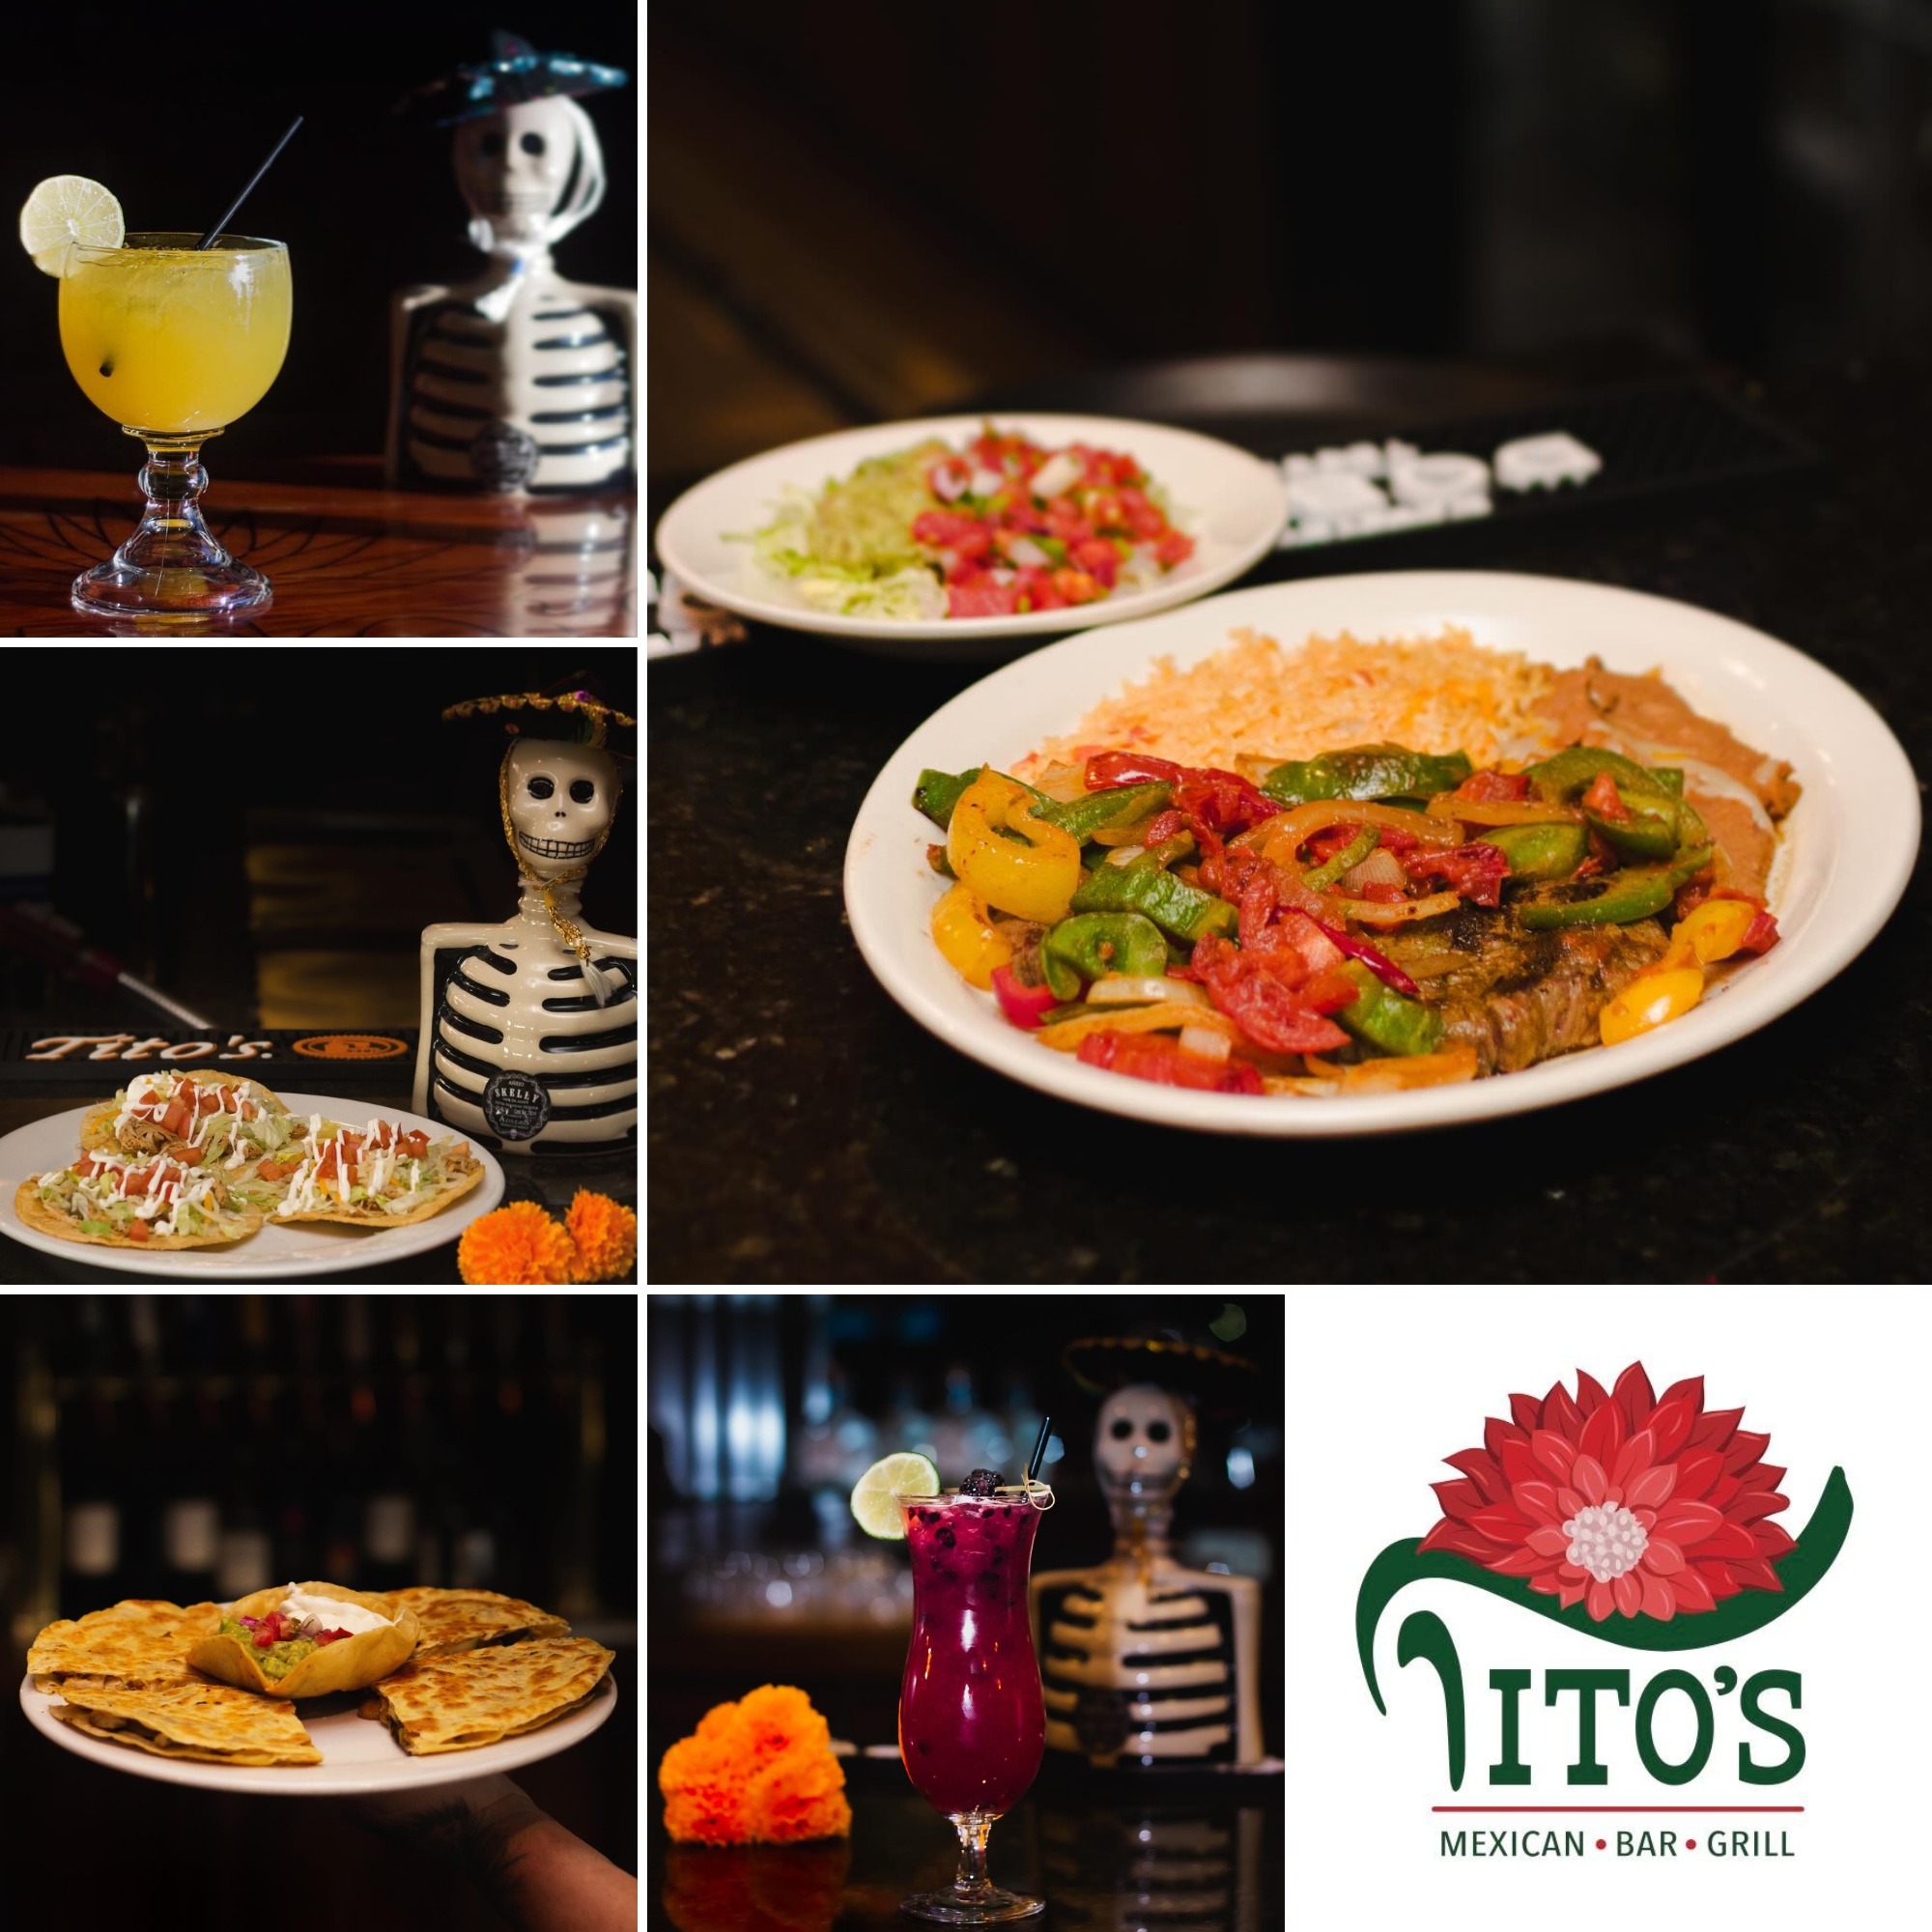 Tito's Mexican Bar & Grill